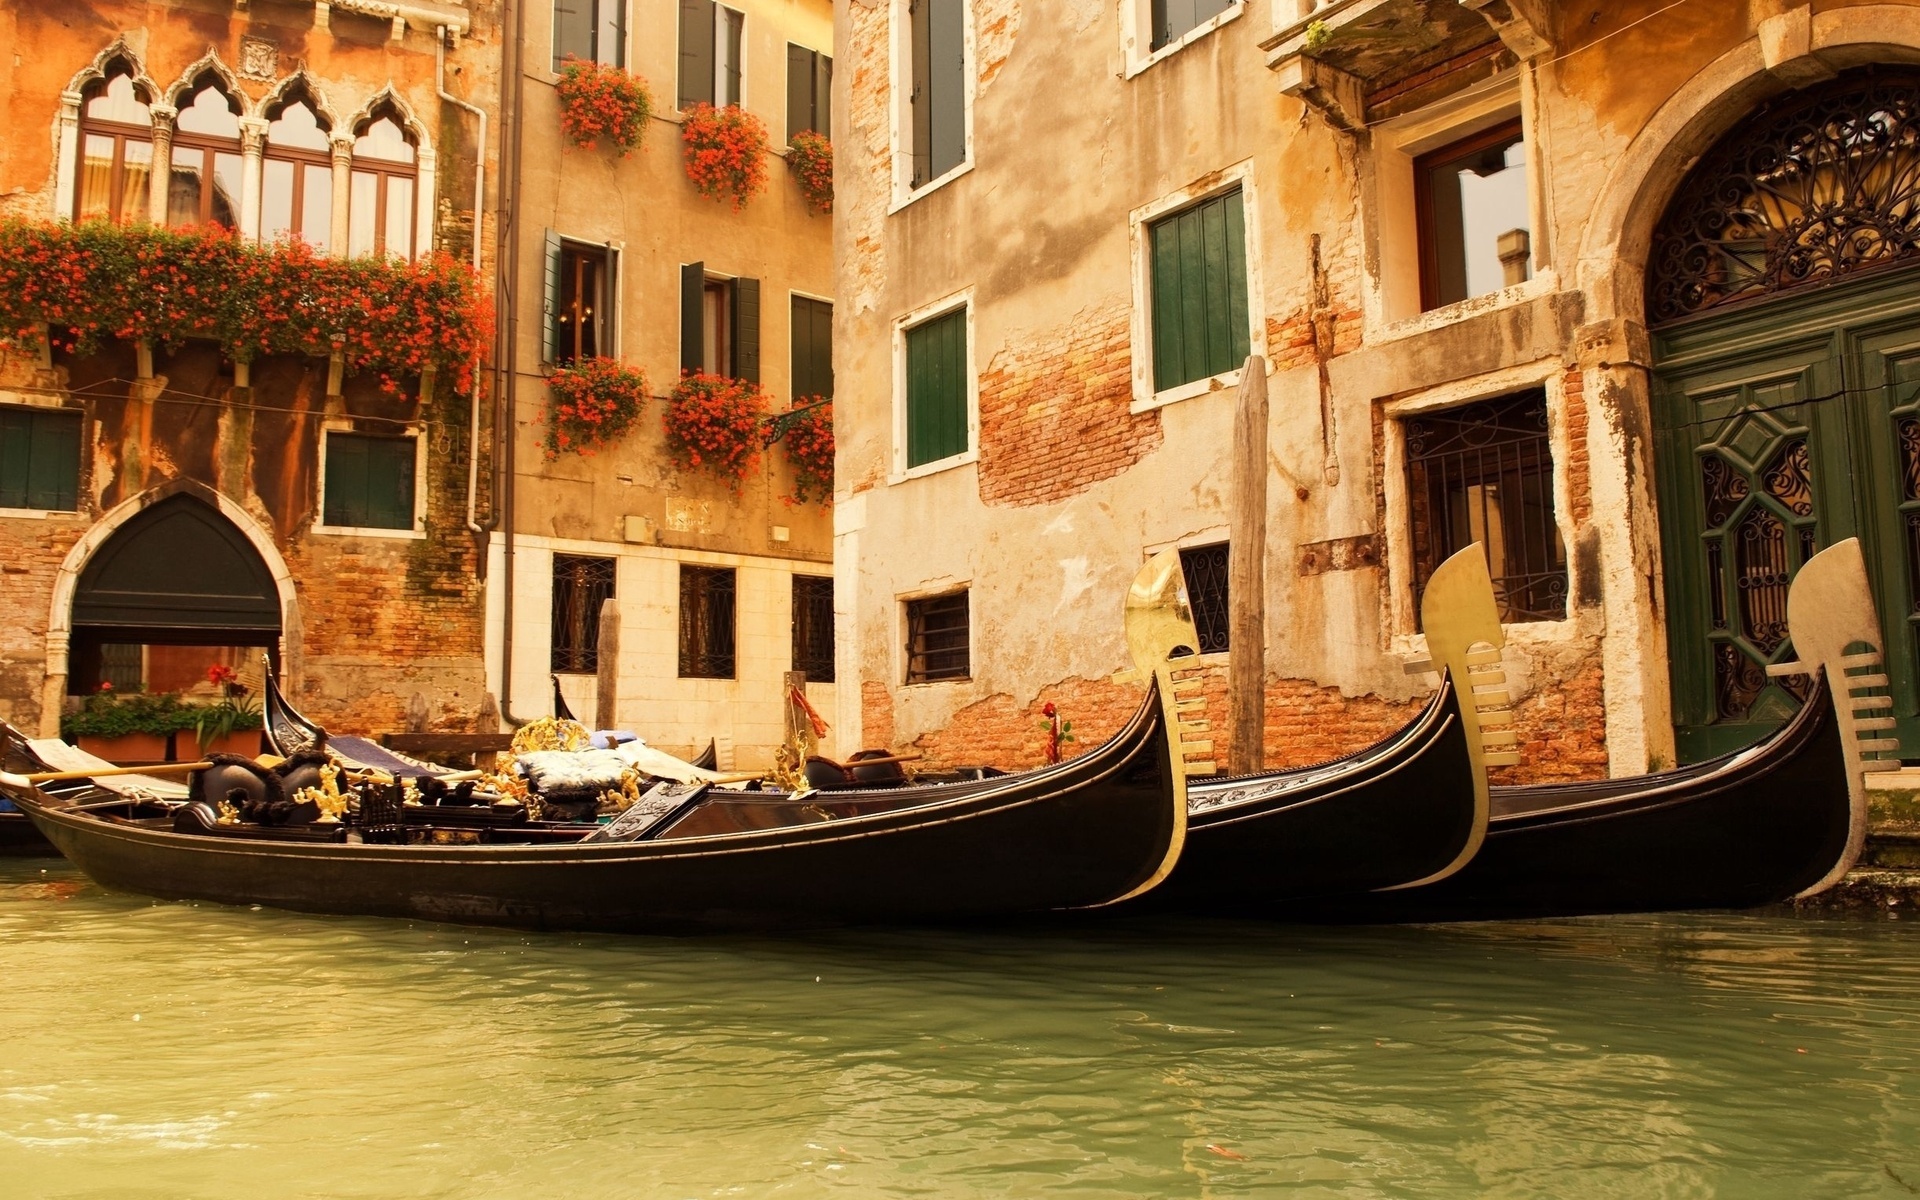 19504 免費下載壁紙 景观, 城市, 船, 威尼斯, 橙色 屏保和圖片